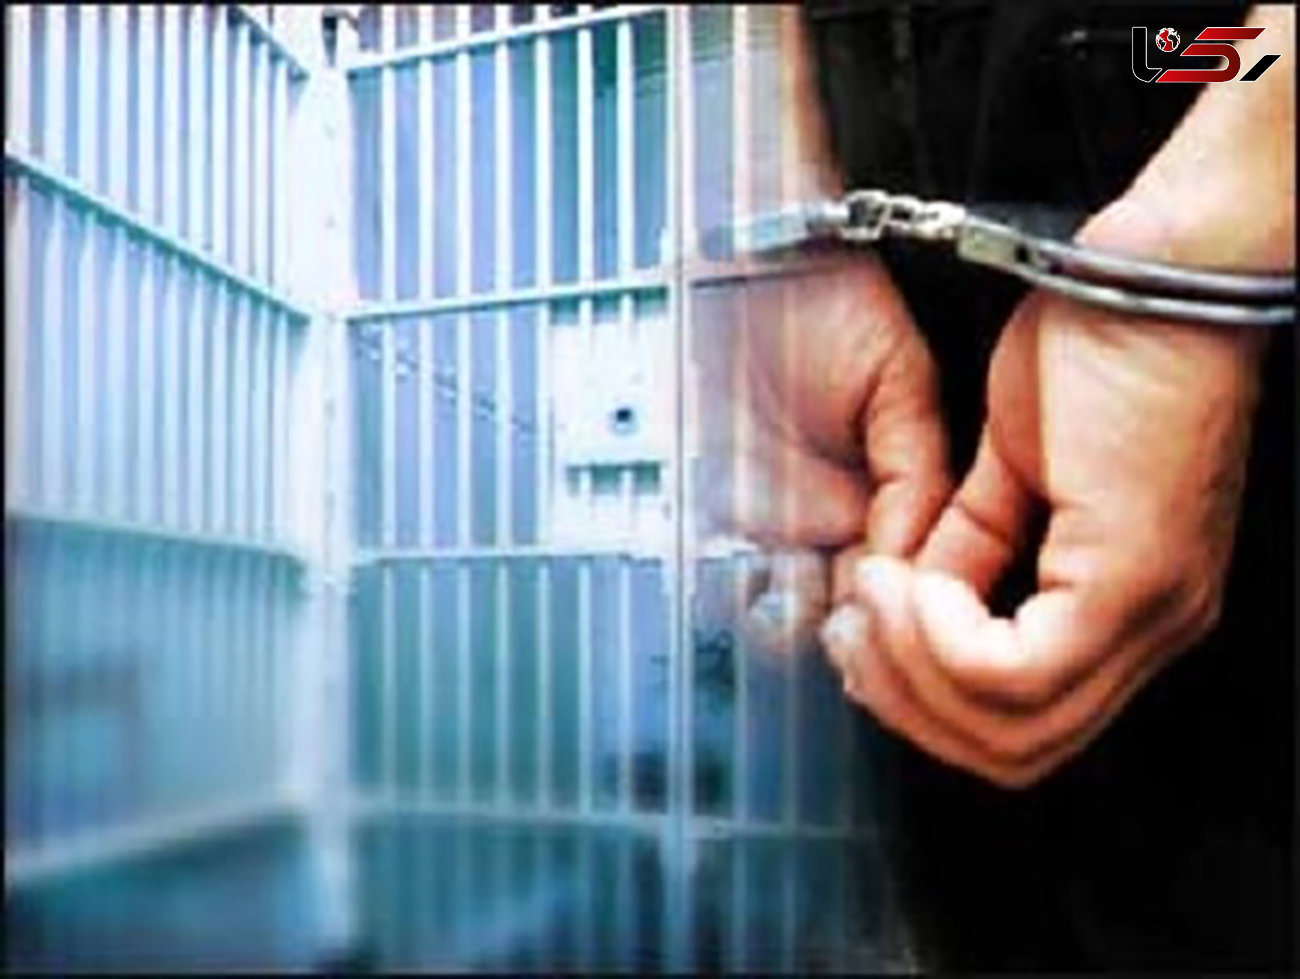  4 زندانی محکوم مالی از زندان های استان اصفهان آزاد شدند